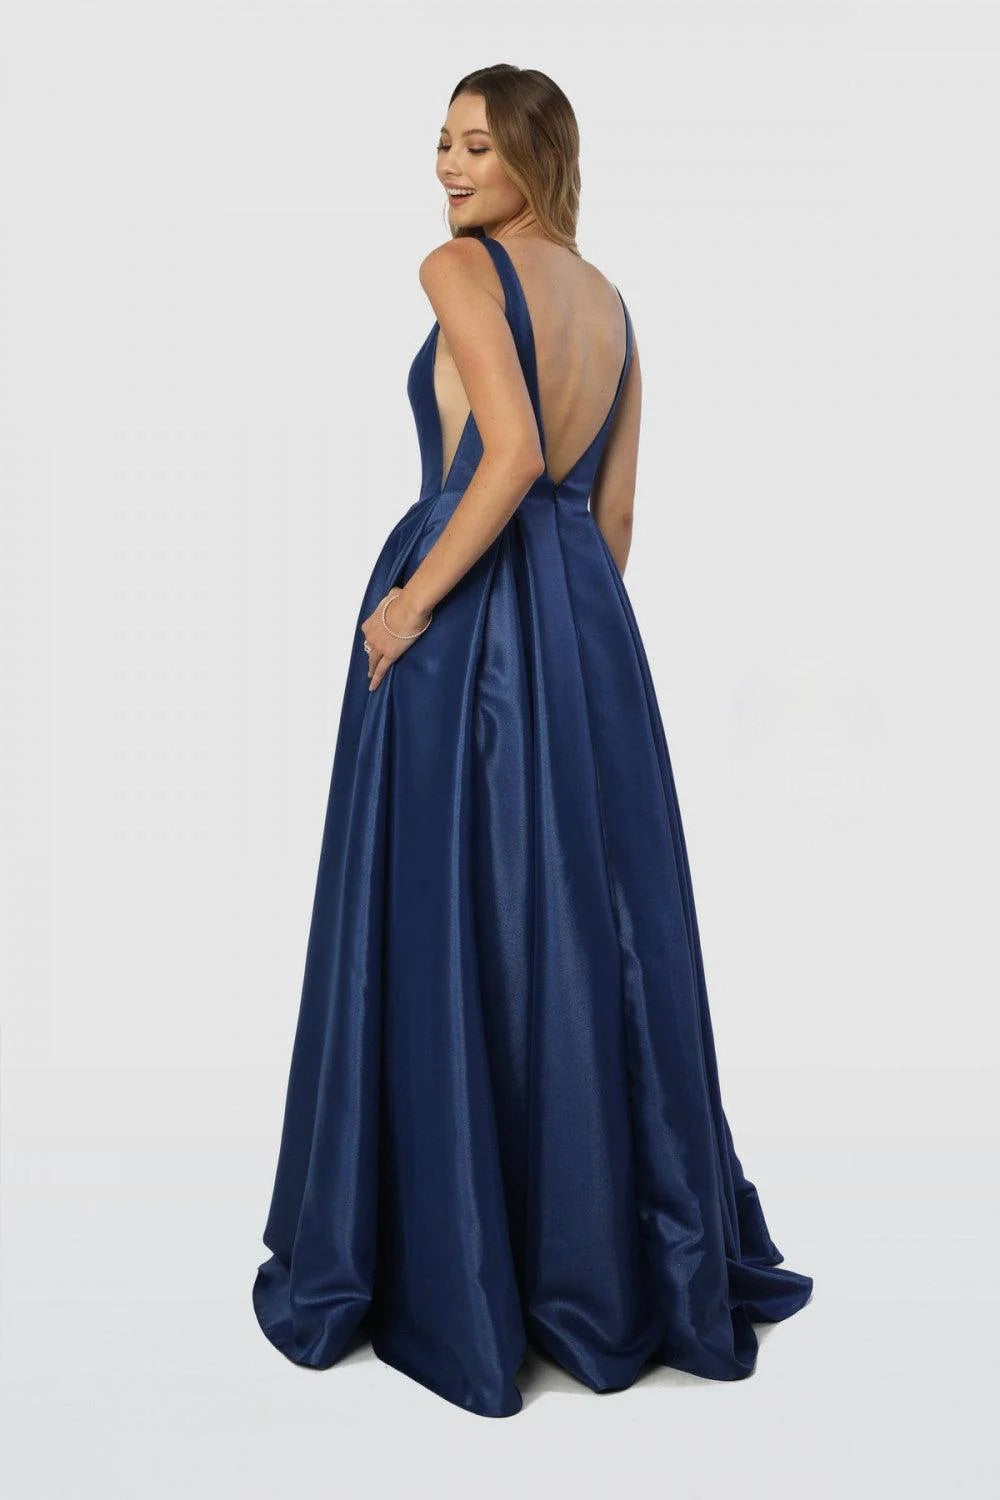 Nox Royal Blue Satin Princess Evening Gown